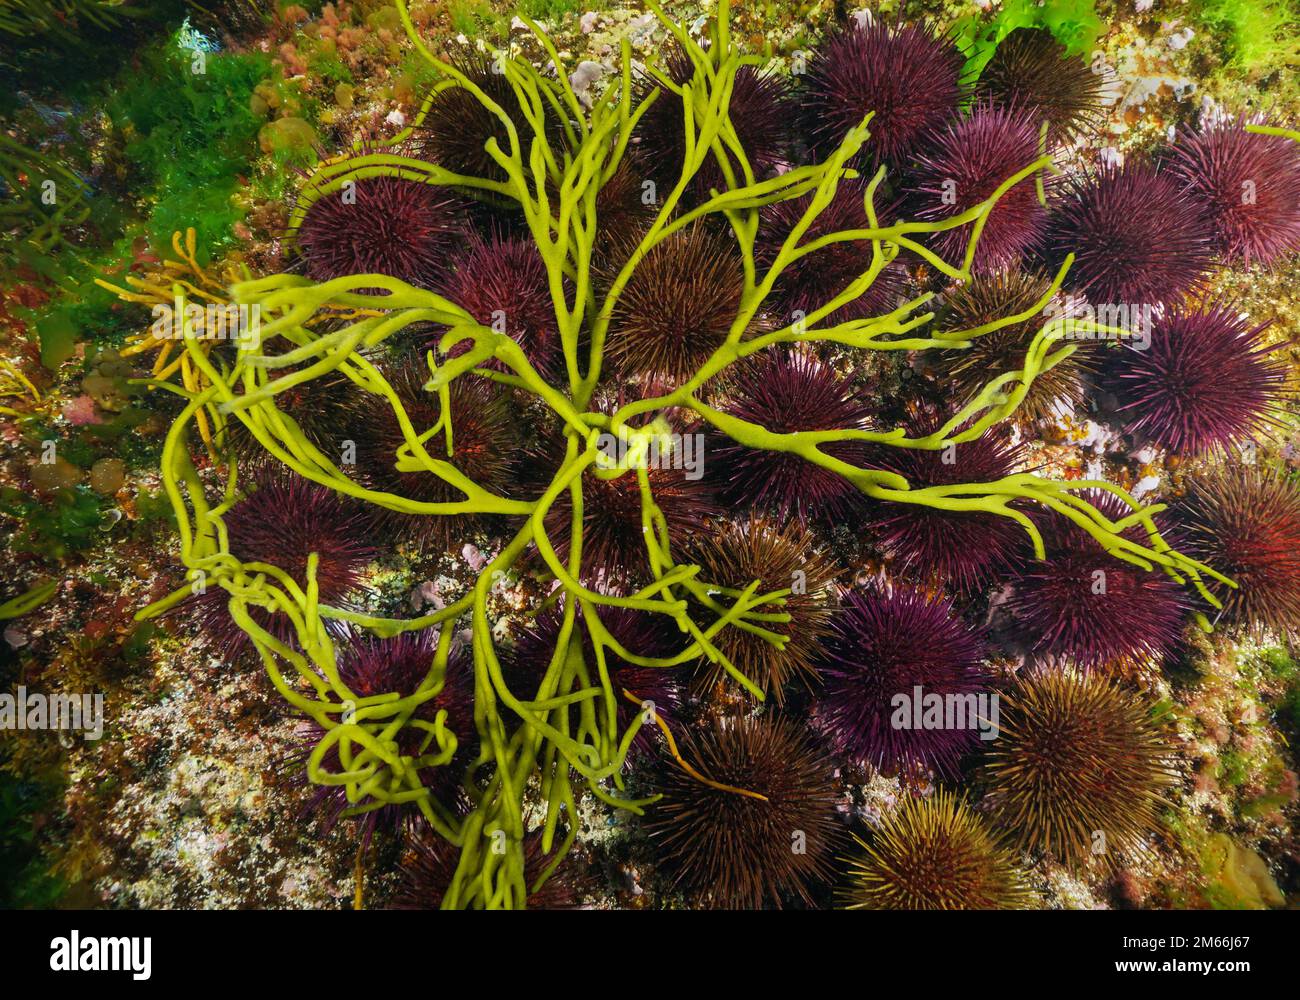 Codium seaweed over sea urchins underwater in the ocean, eastern Atlantic, Spain, Galicia Stock Photo